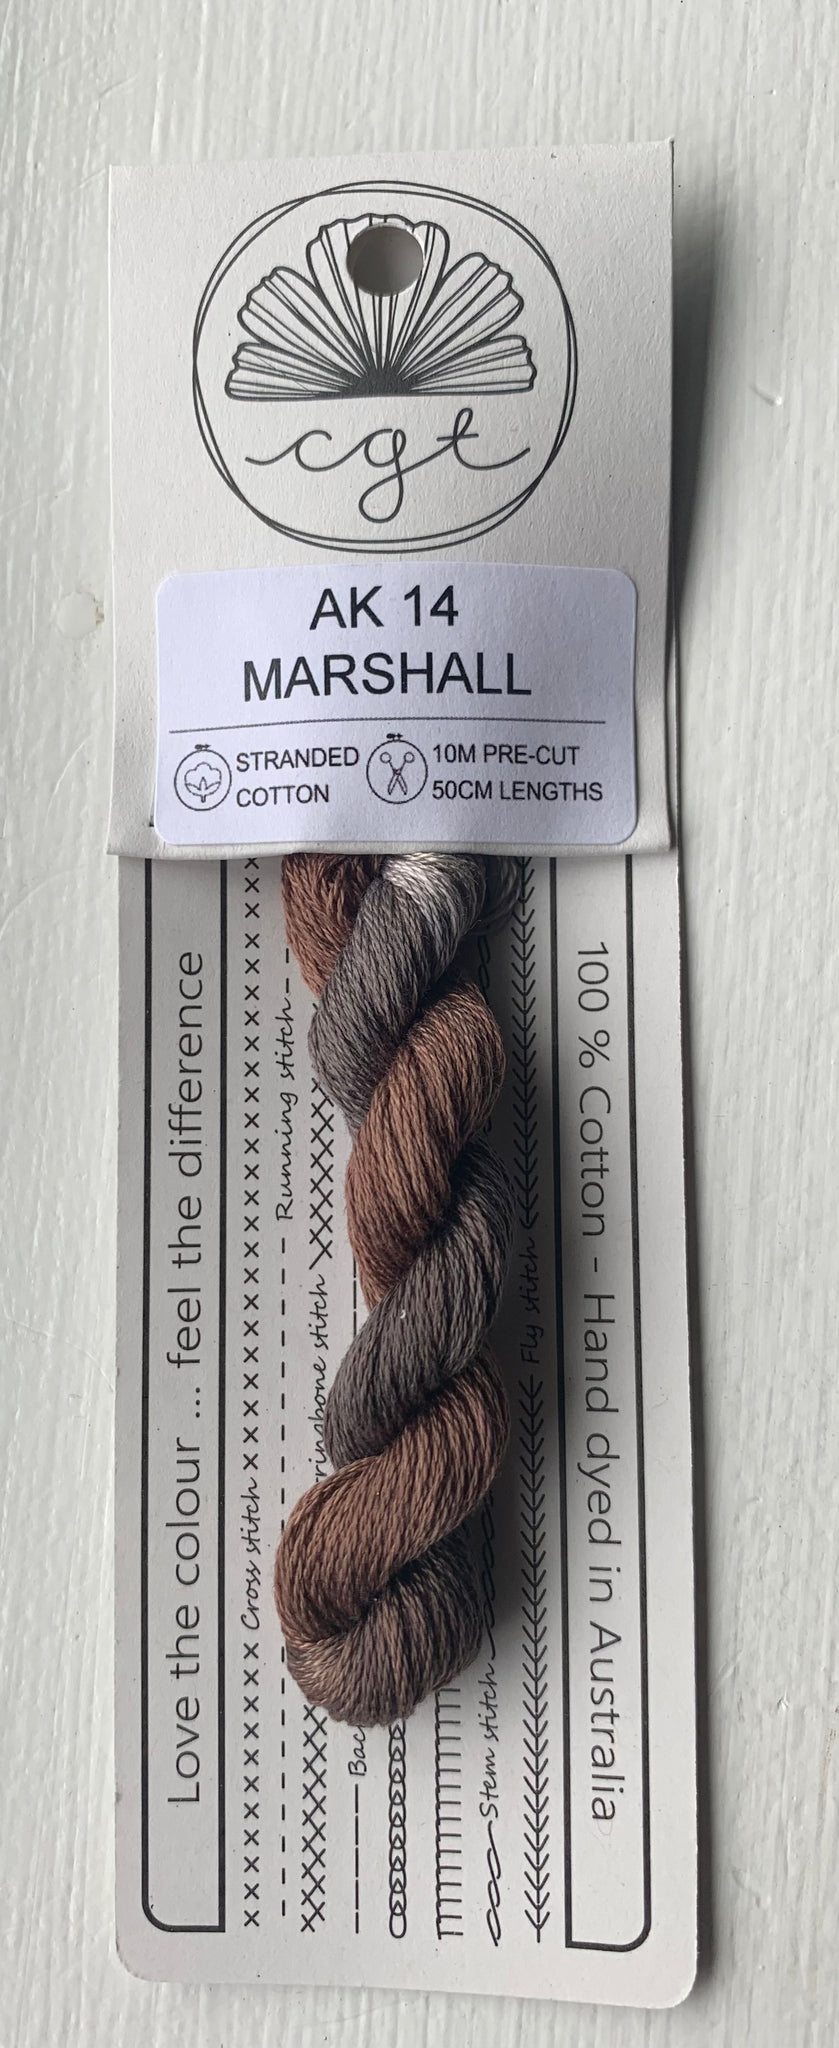 Marshall - Cottage Garden Threads